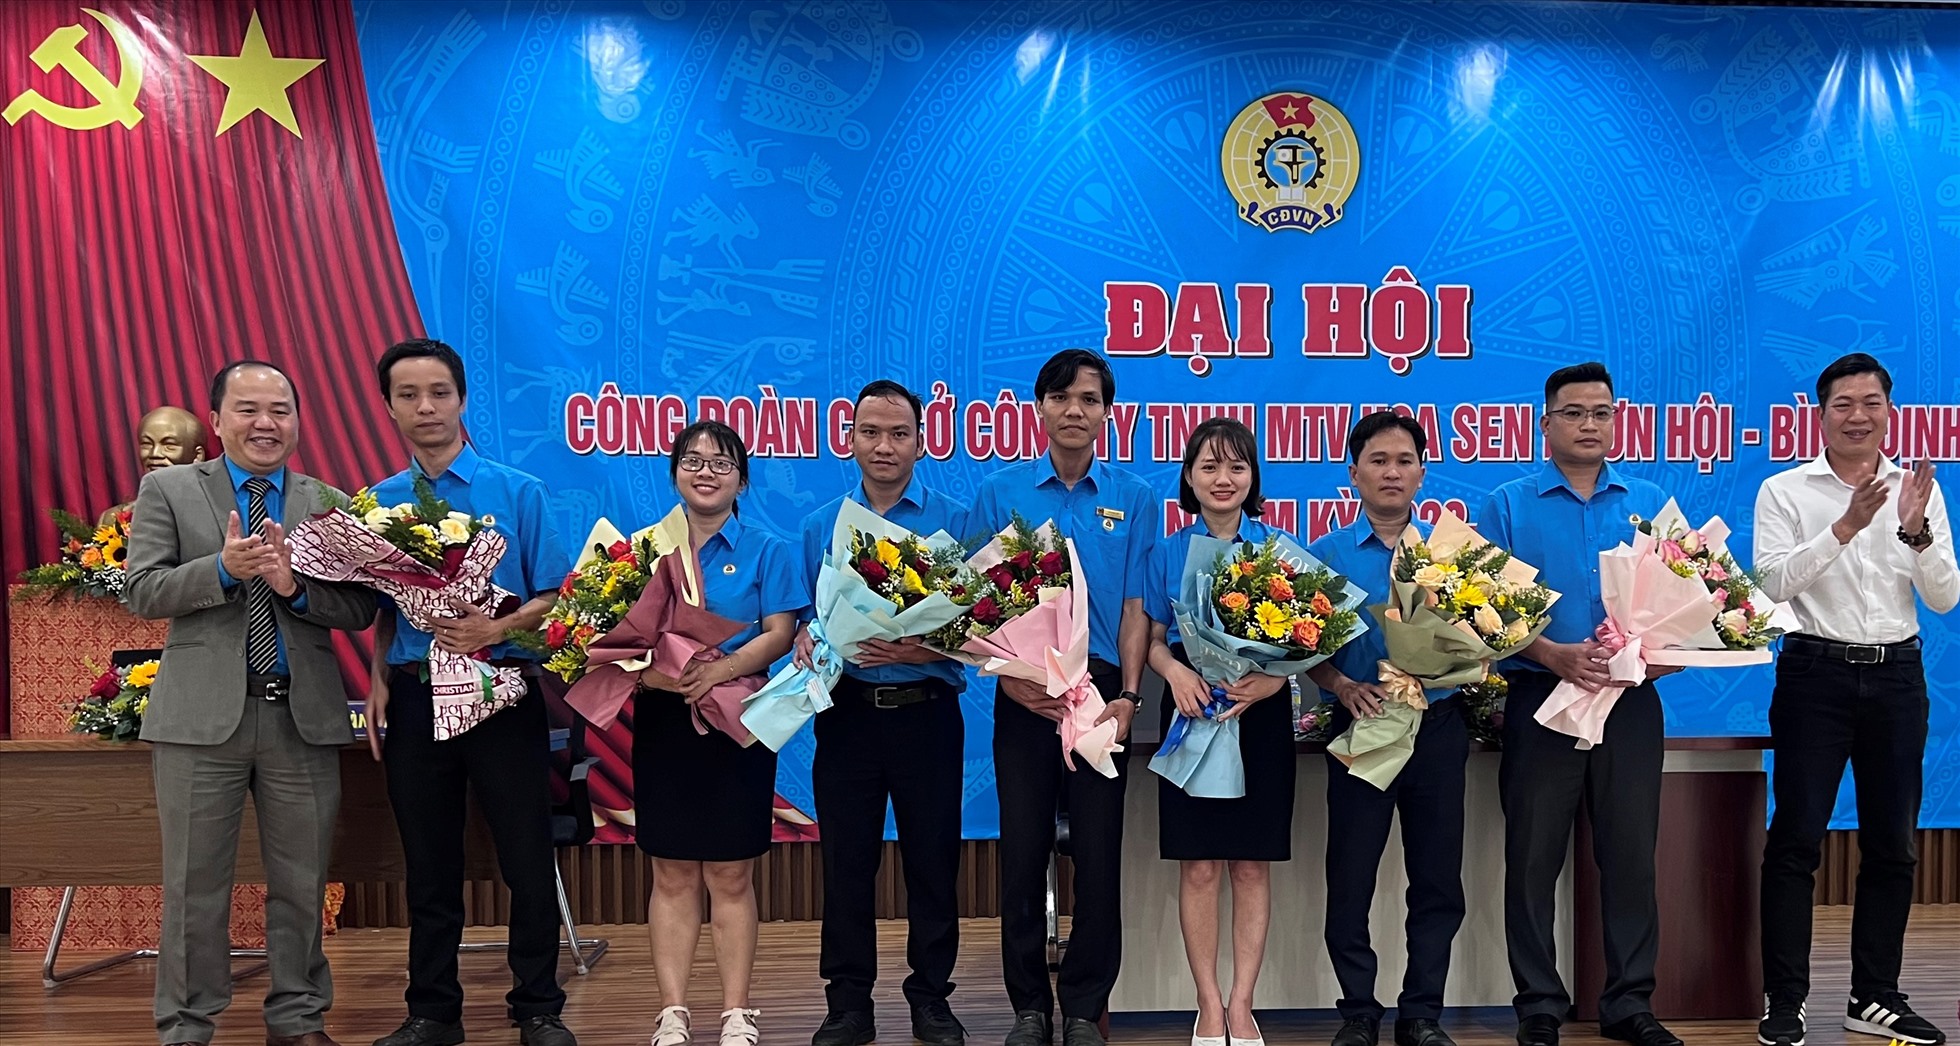 Ông Lê Từ Bình (bên trái) tặng hoa cho các thành viên Ban Chấp hành khóa mới.  Ảnh: Xuân Nhàn